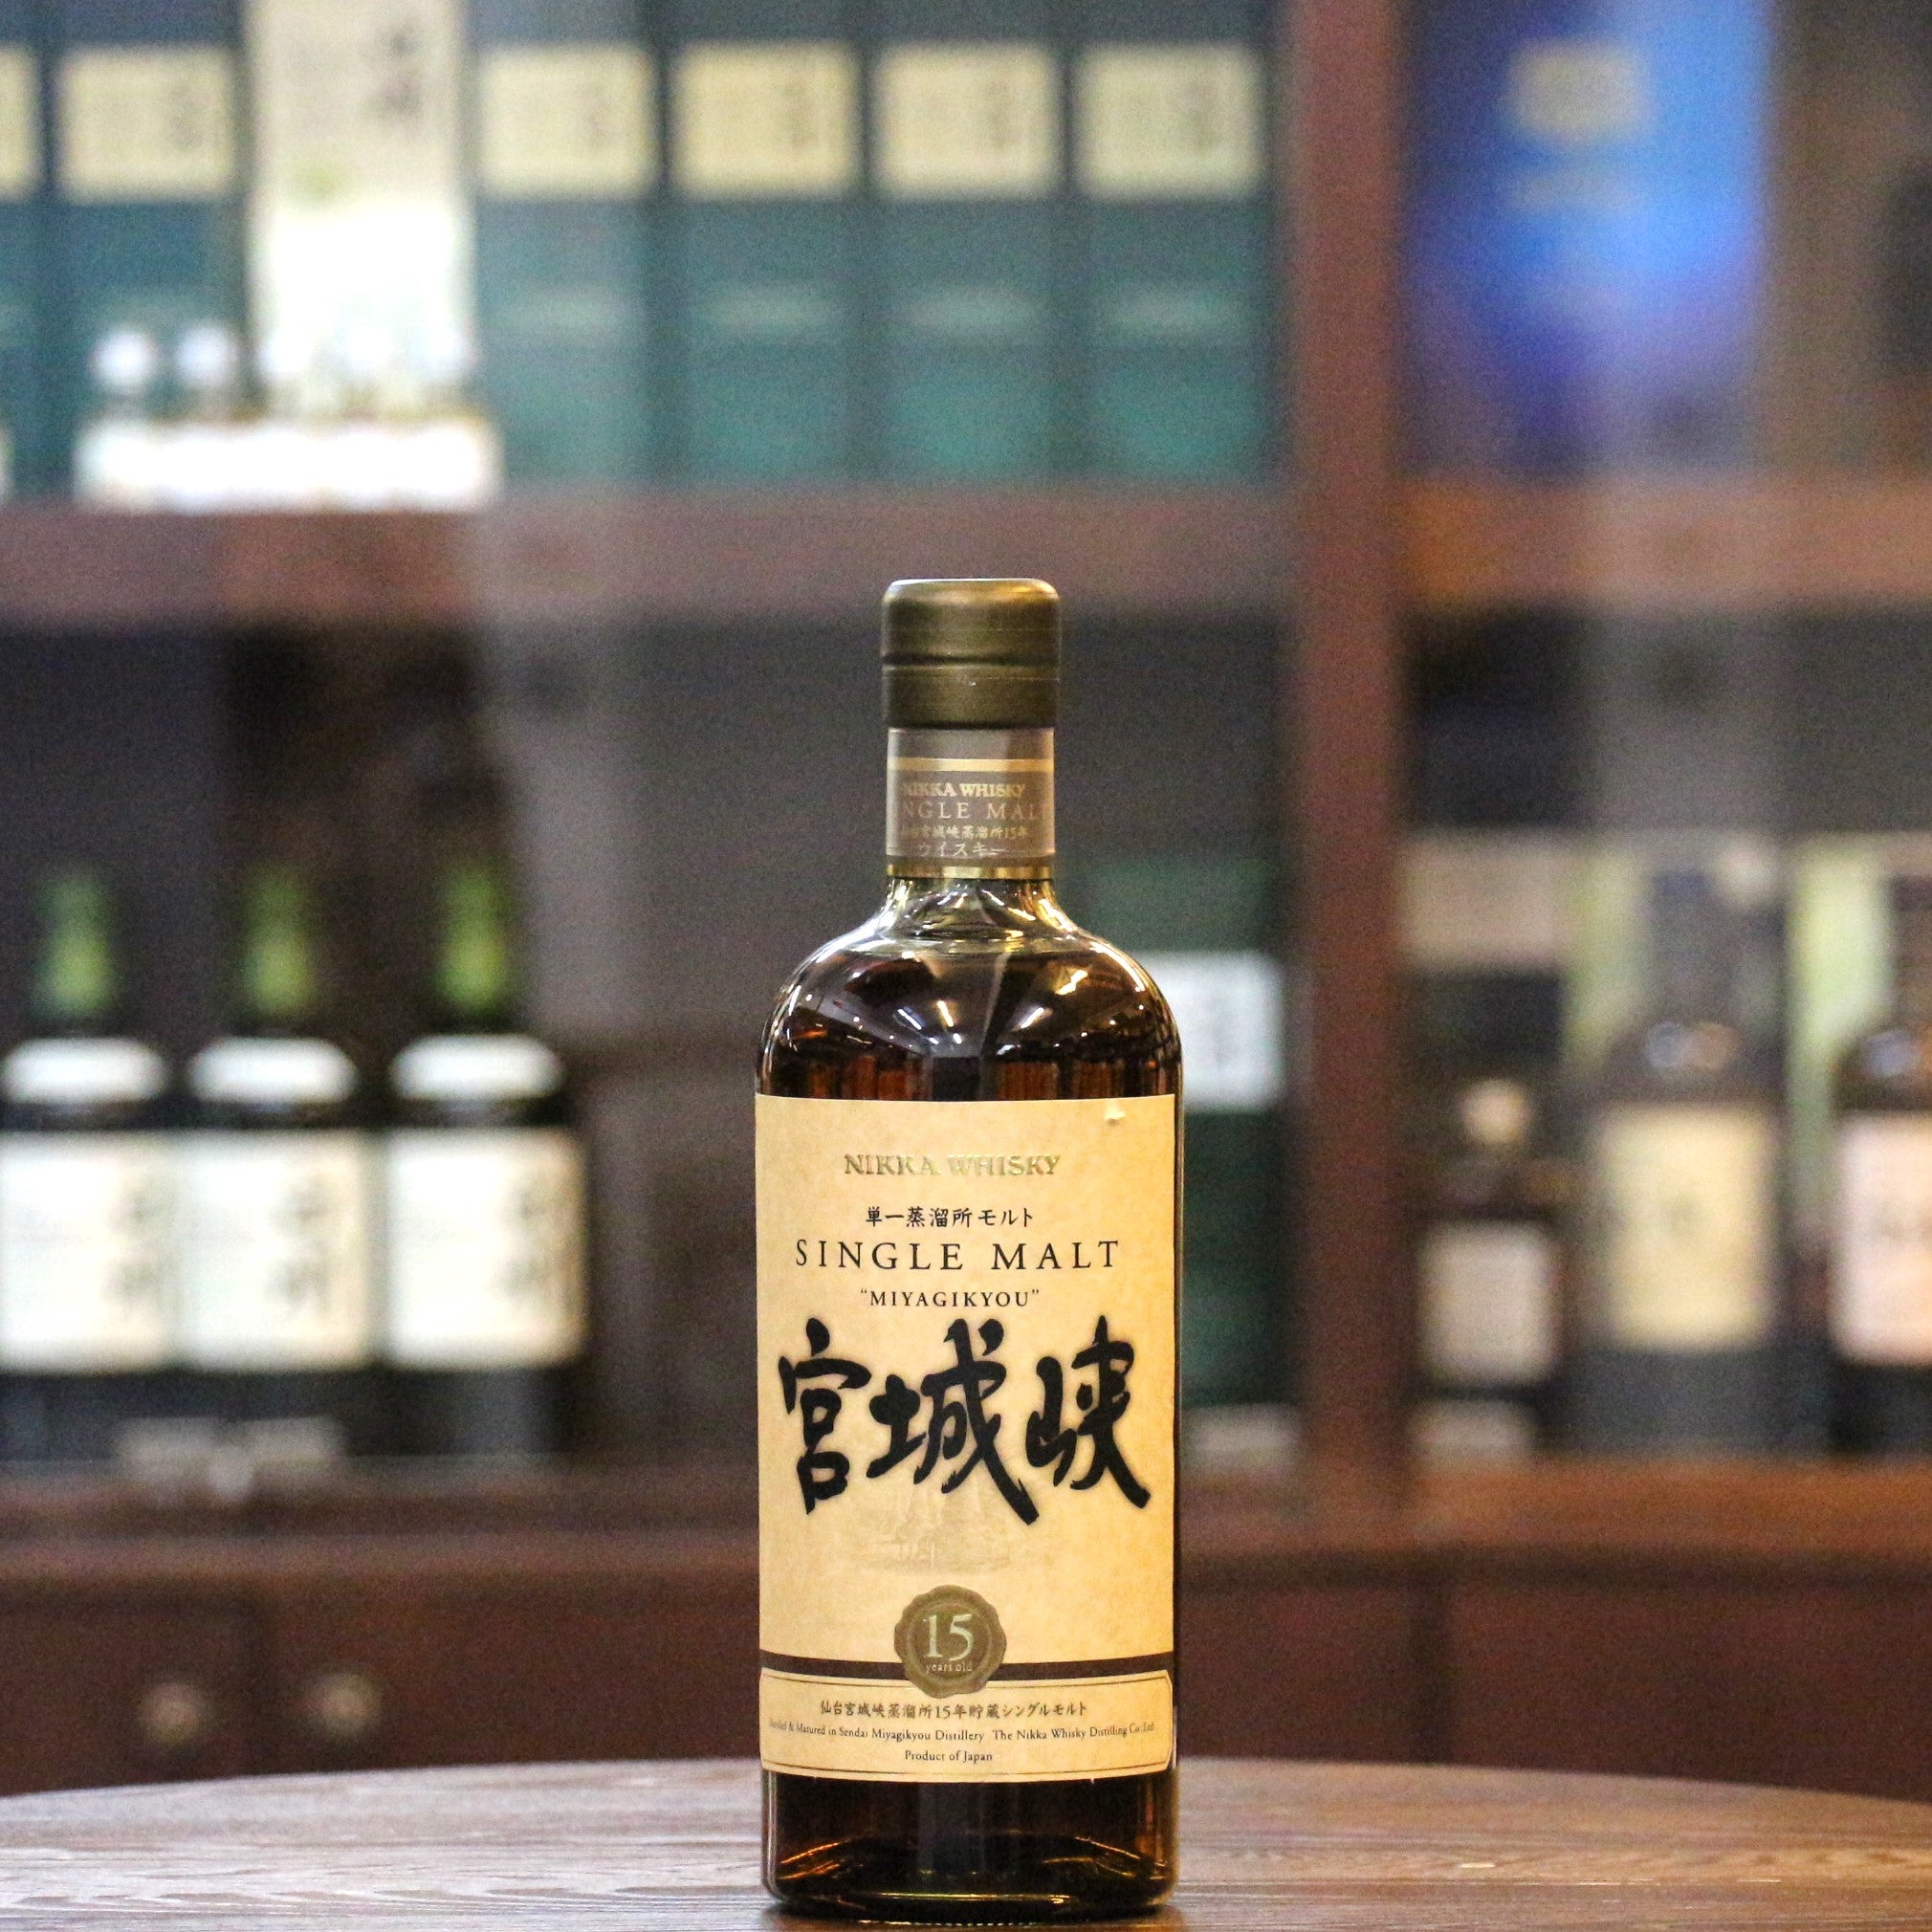 Miyagikyo 15 Years "Miyagikyou" Single Malt Japanese Whisky (Discontinued Older Bottling)